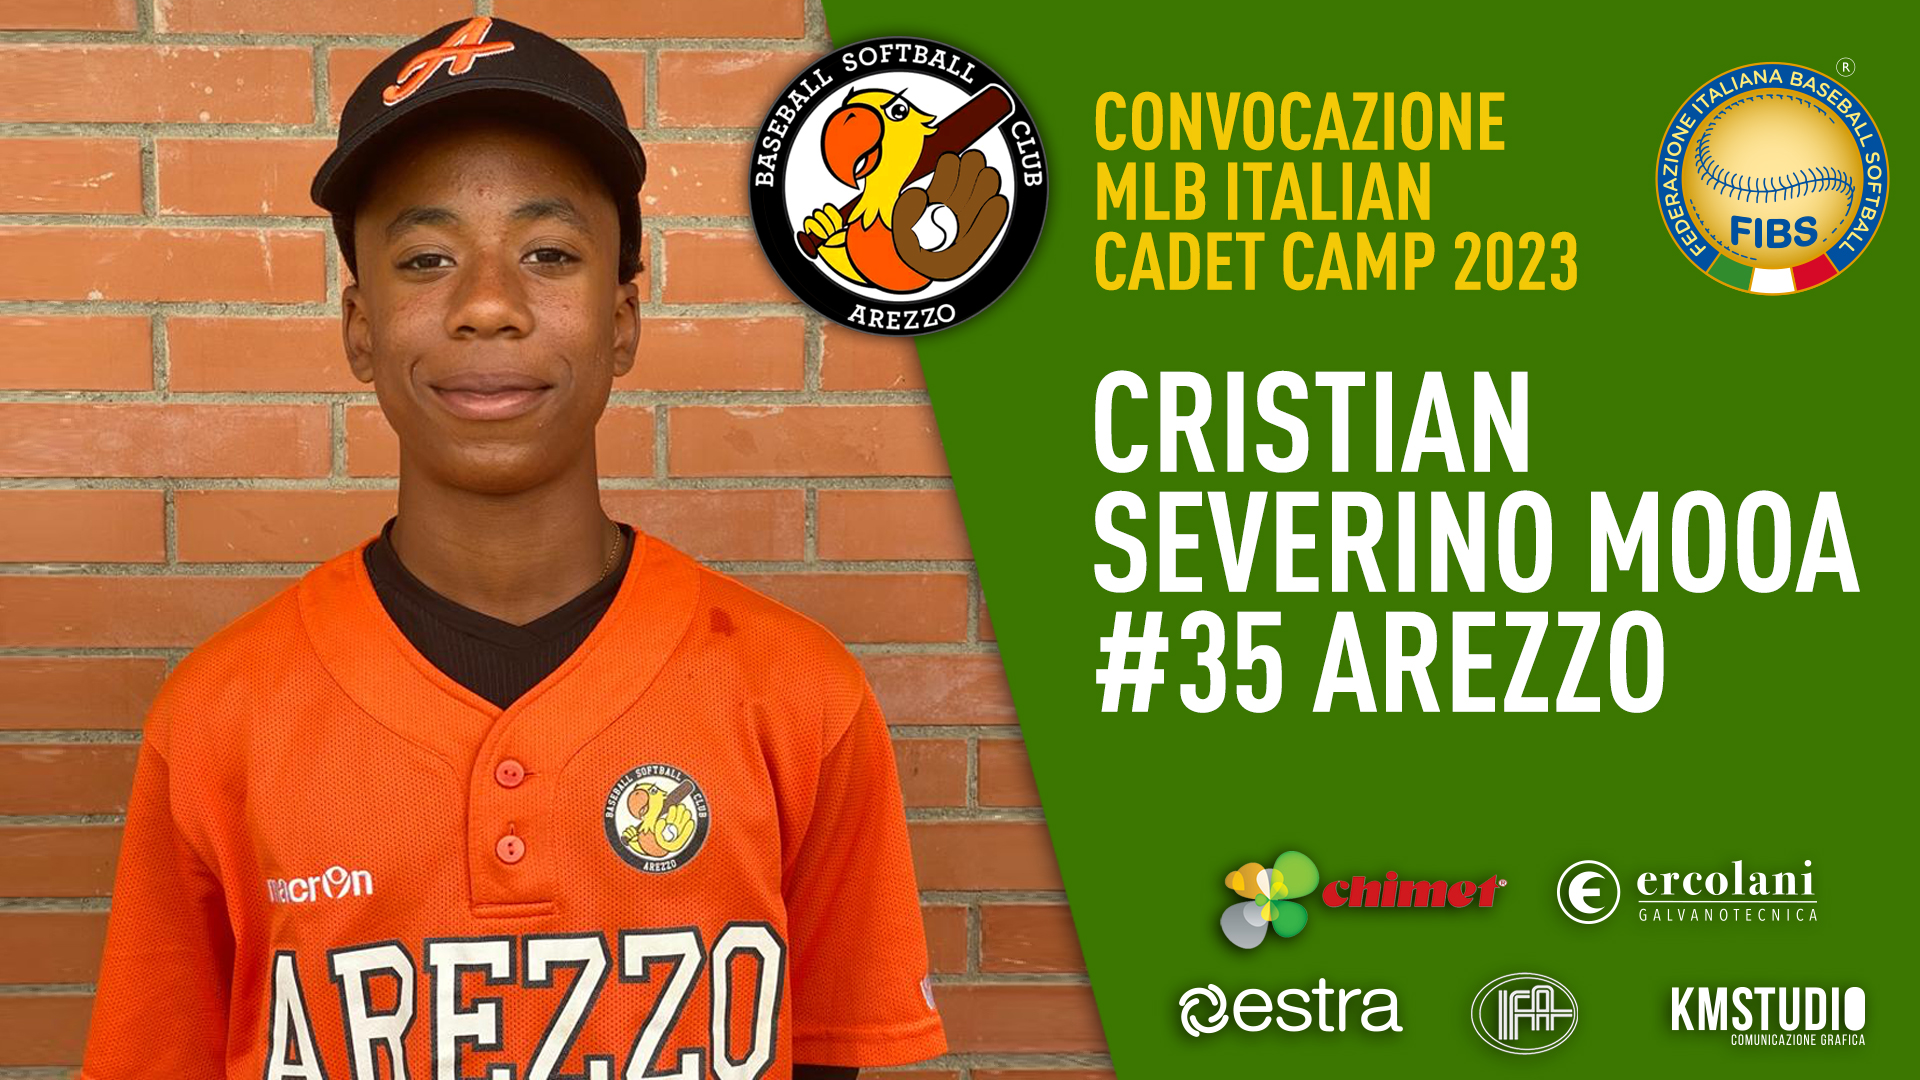 Cristian Severino Mooa - MLB Italian Cadet Camp 2023